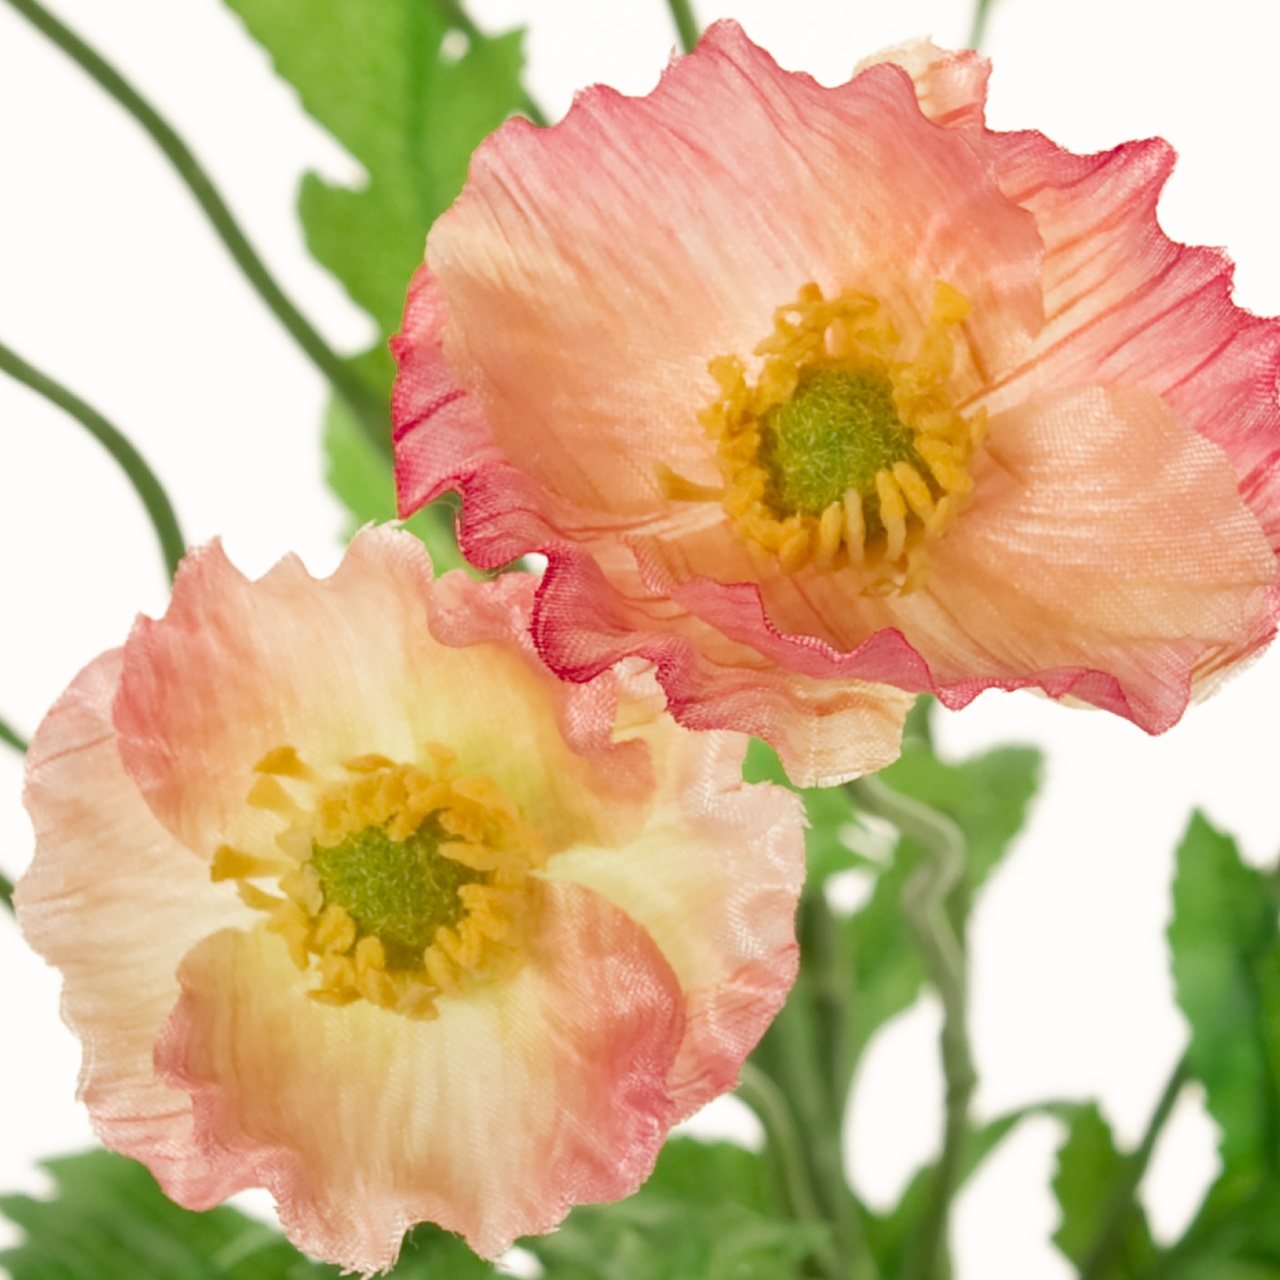 マイフラ 通販 Magiq ブルームポピー ブッシュ ピンク アーティフィシャルフラワー 造花 Fm 002 ポピー ピンク Magiq アーティフィシャルフラワー 造花 全国にmagiq 花器 花資材などをお届けします